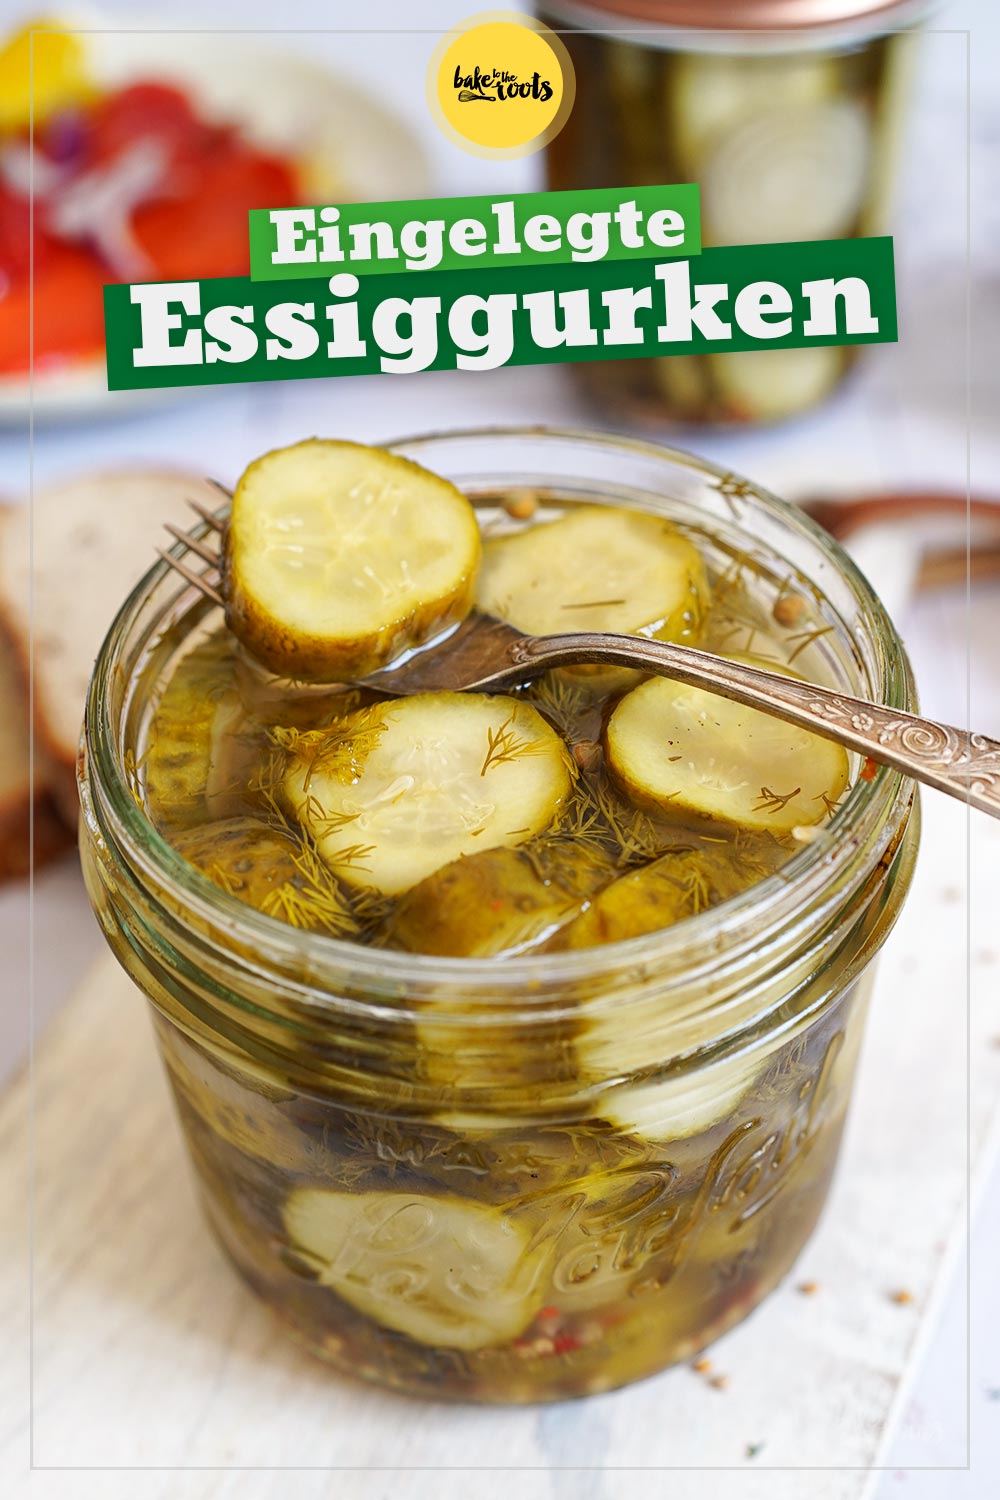 Eingelegte Essiggurken | Bake to the roots